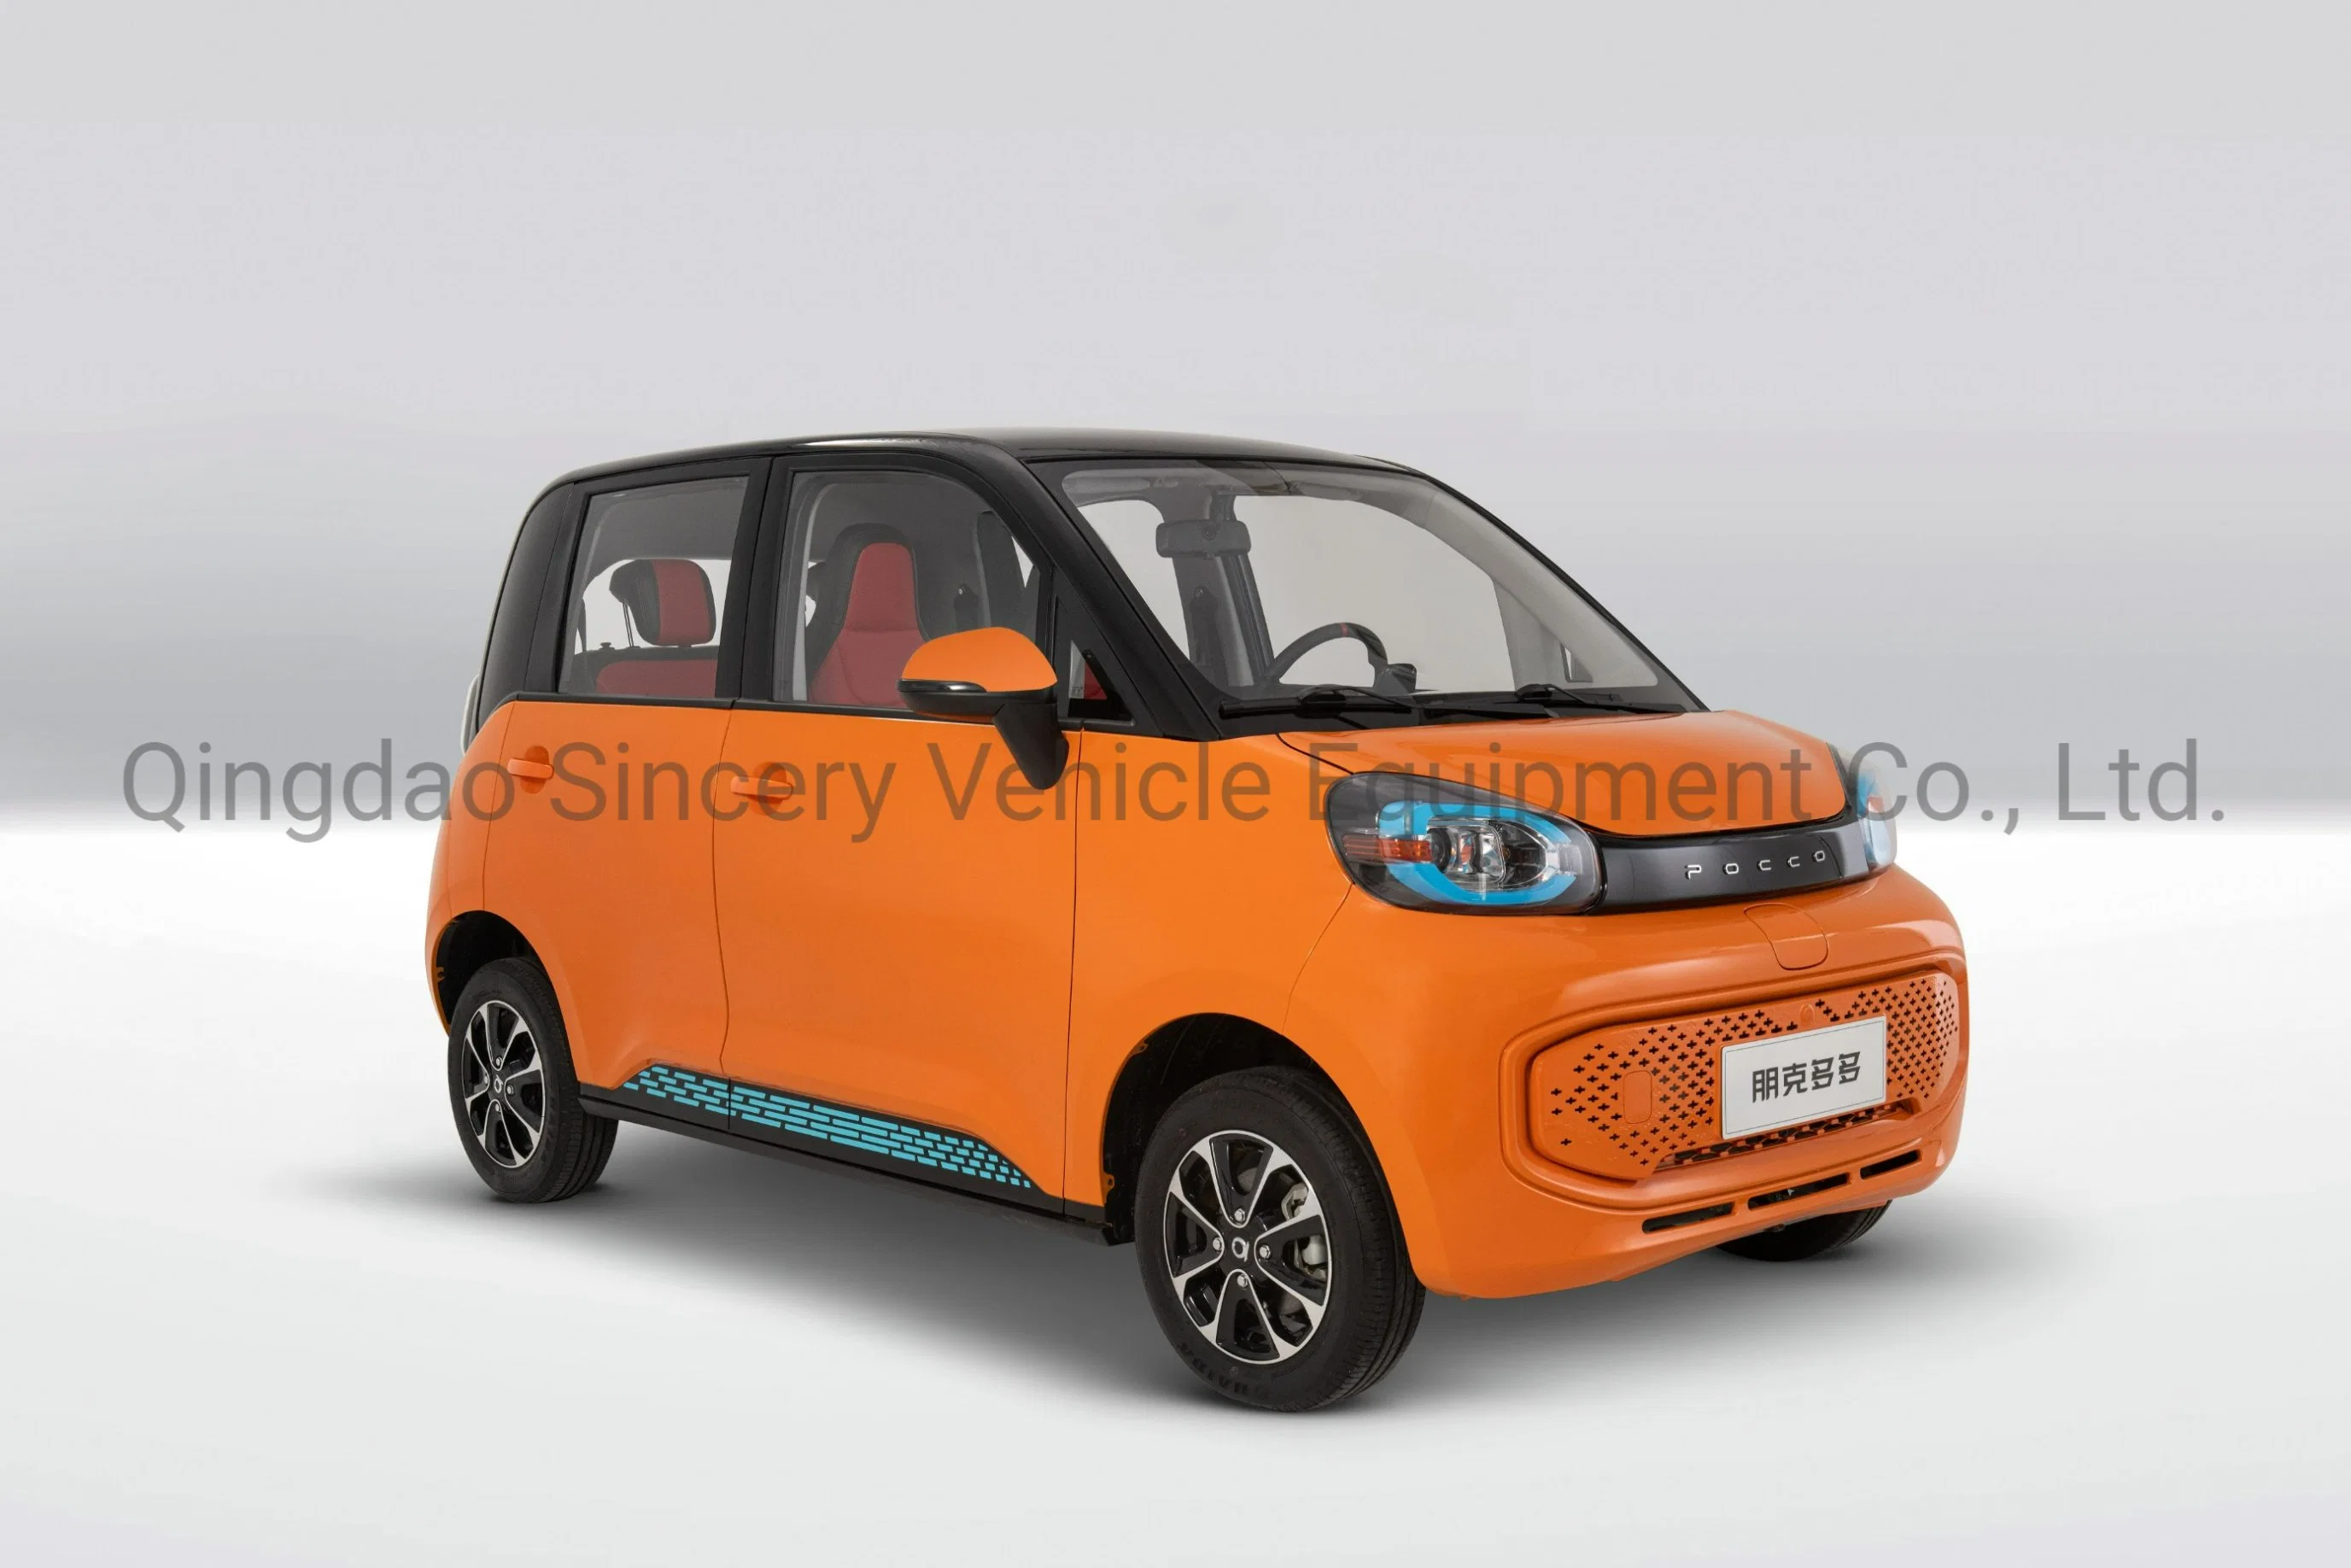 السيارات الشمسية الصين المصنعين عالية السرعة ميني إلكترون فولت سيارة كهربائية سيارة سيارة سيارة سيارة كهربائية سيارة BEV بطارية سيارة السيارات الشمسية